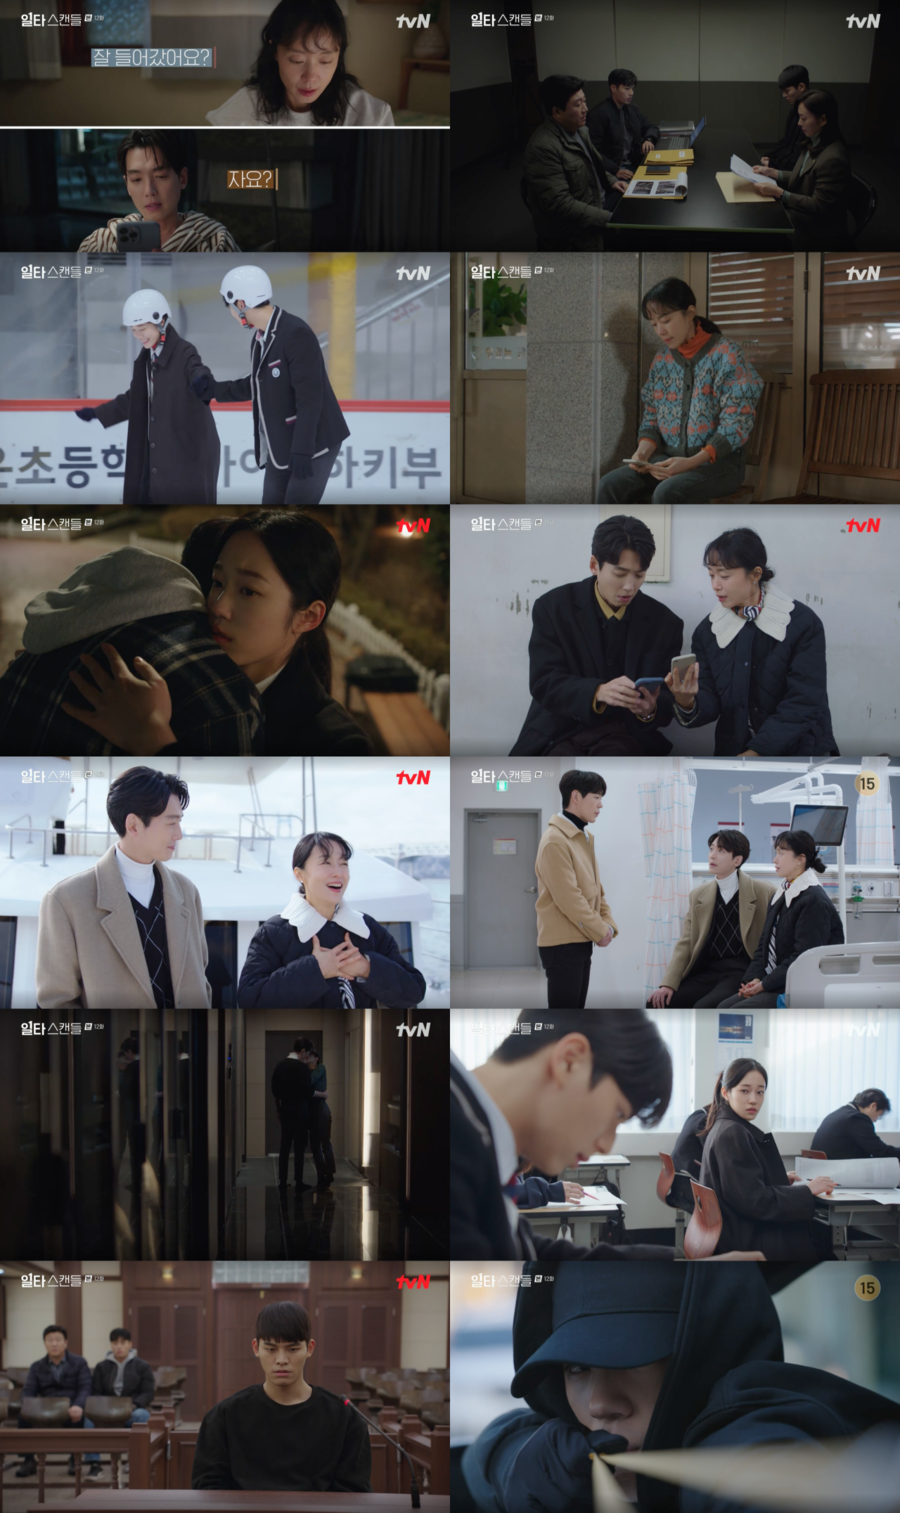 ▲ tvN 토일드라마 '일타 스캔들' 방송화면. 제공| tvN